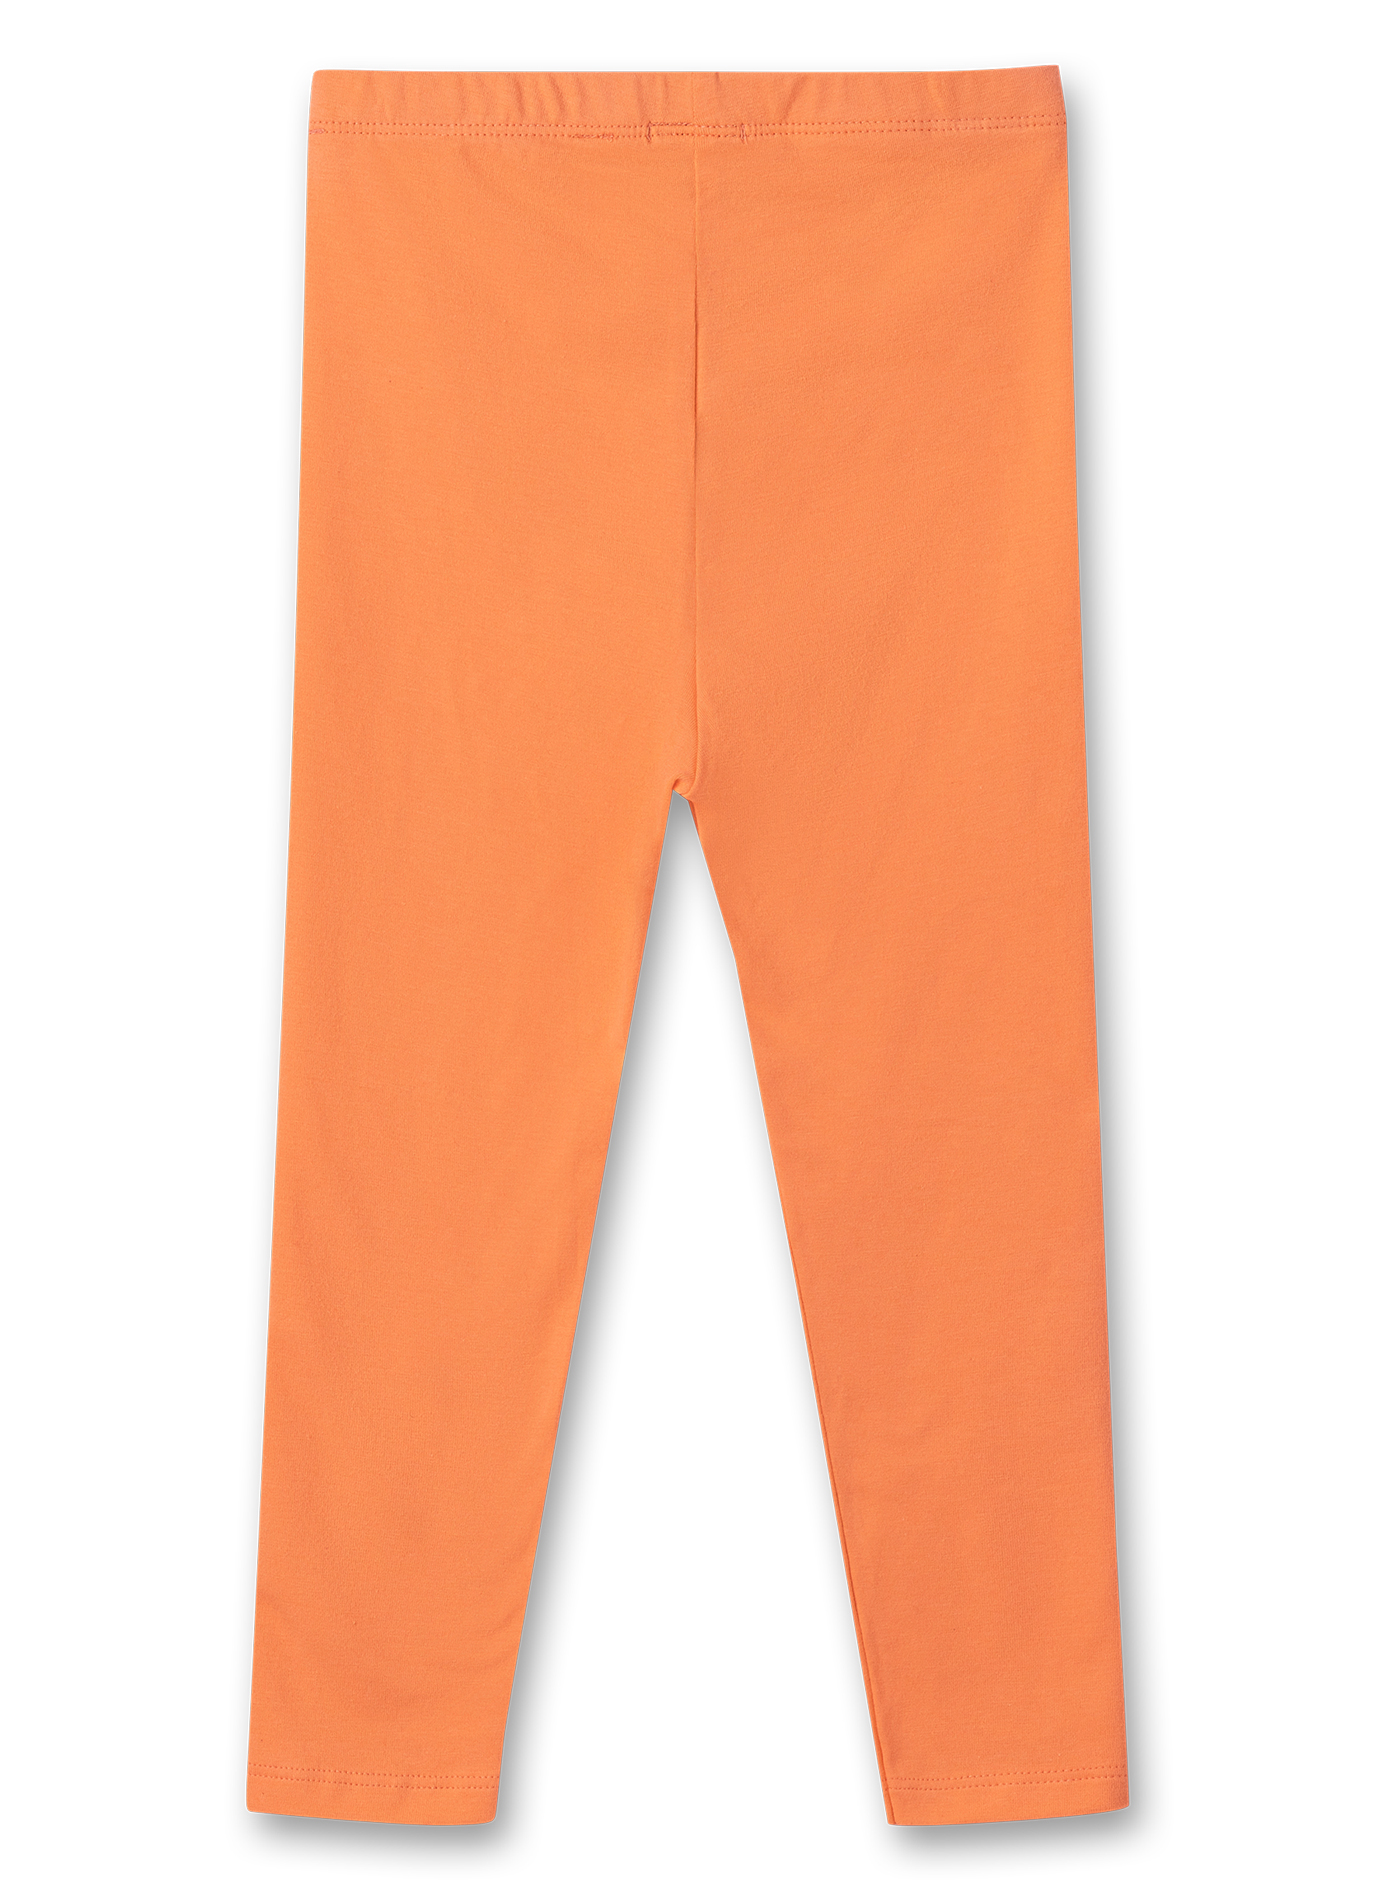 Mädchen-Leggings Orange